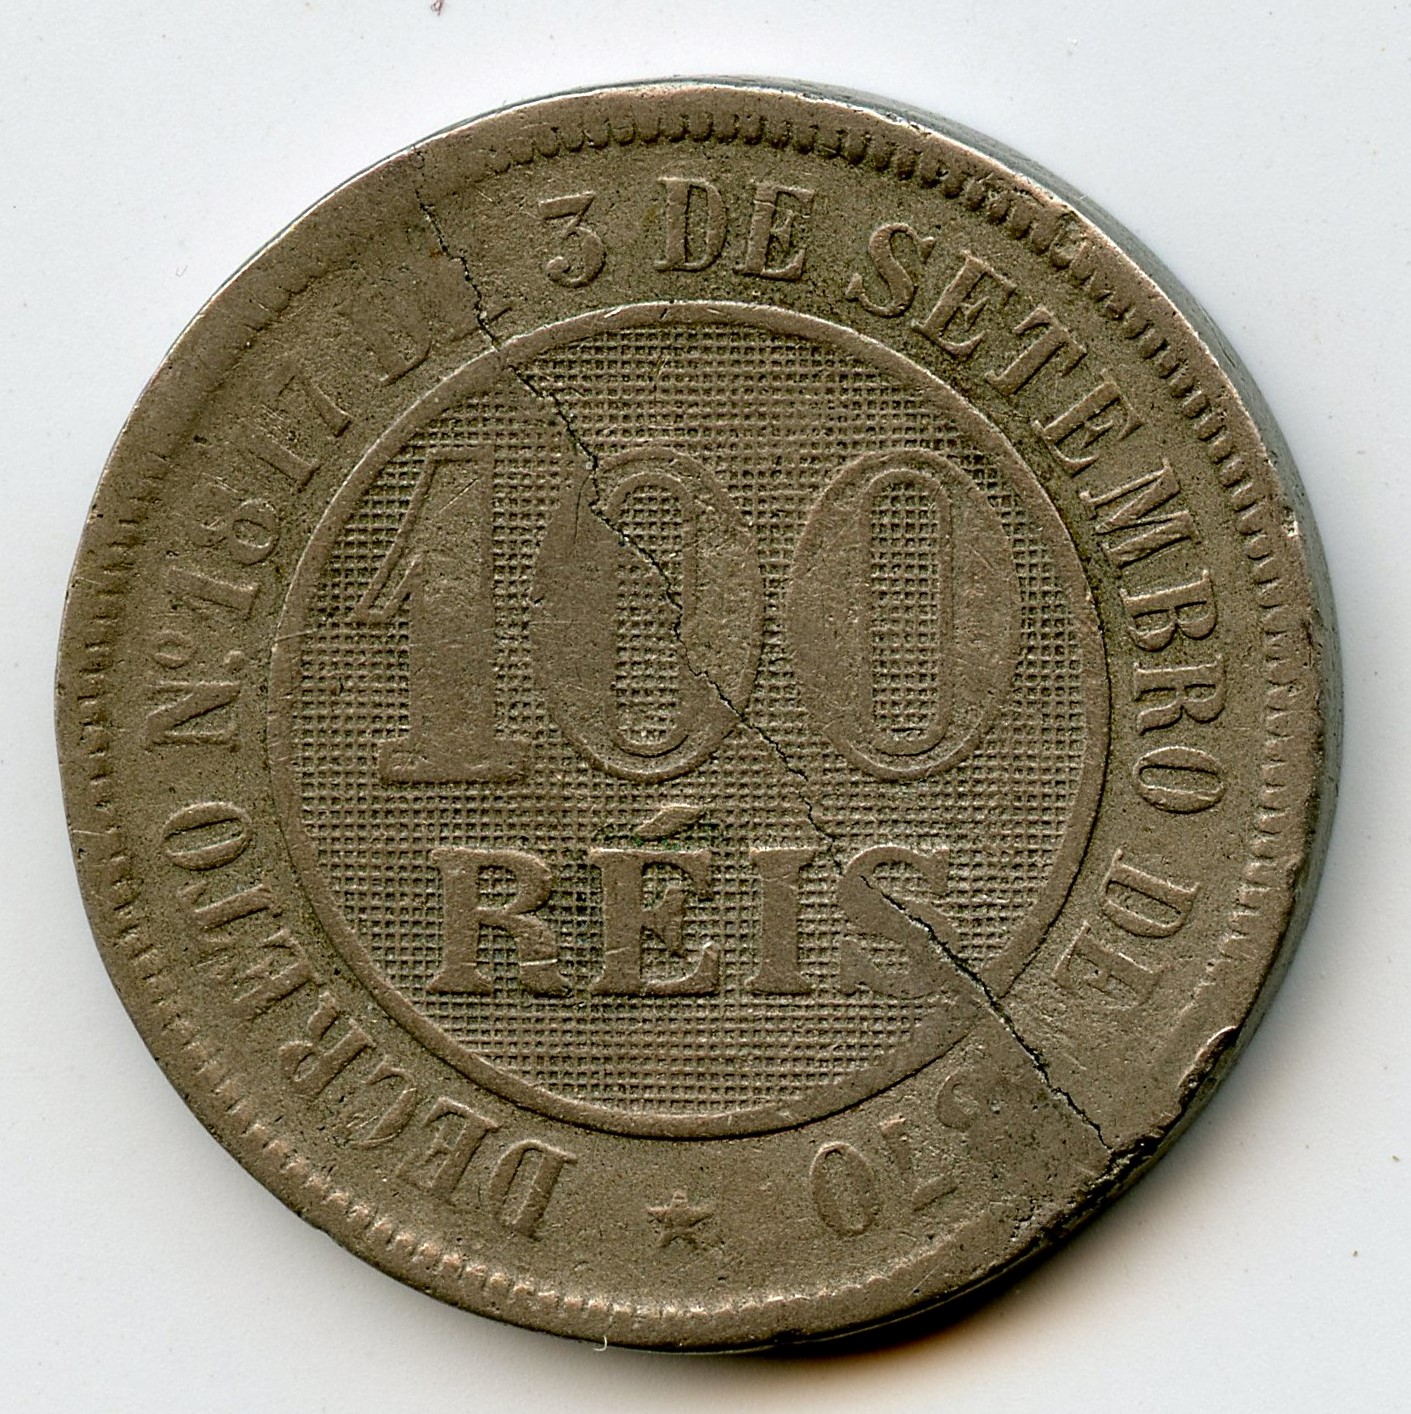 100 reis 1887 défaut de flan002.jpg